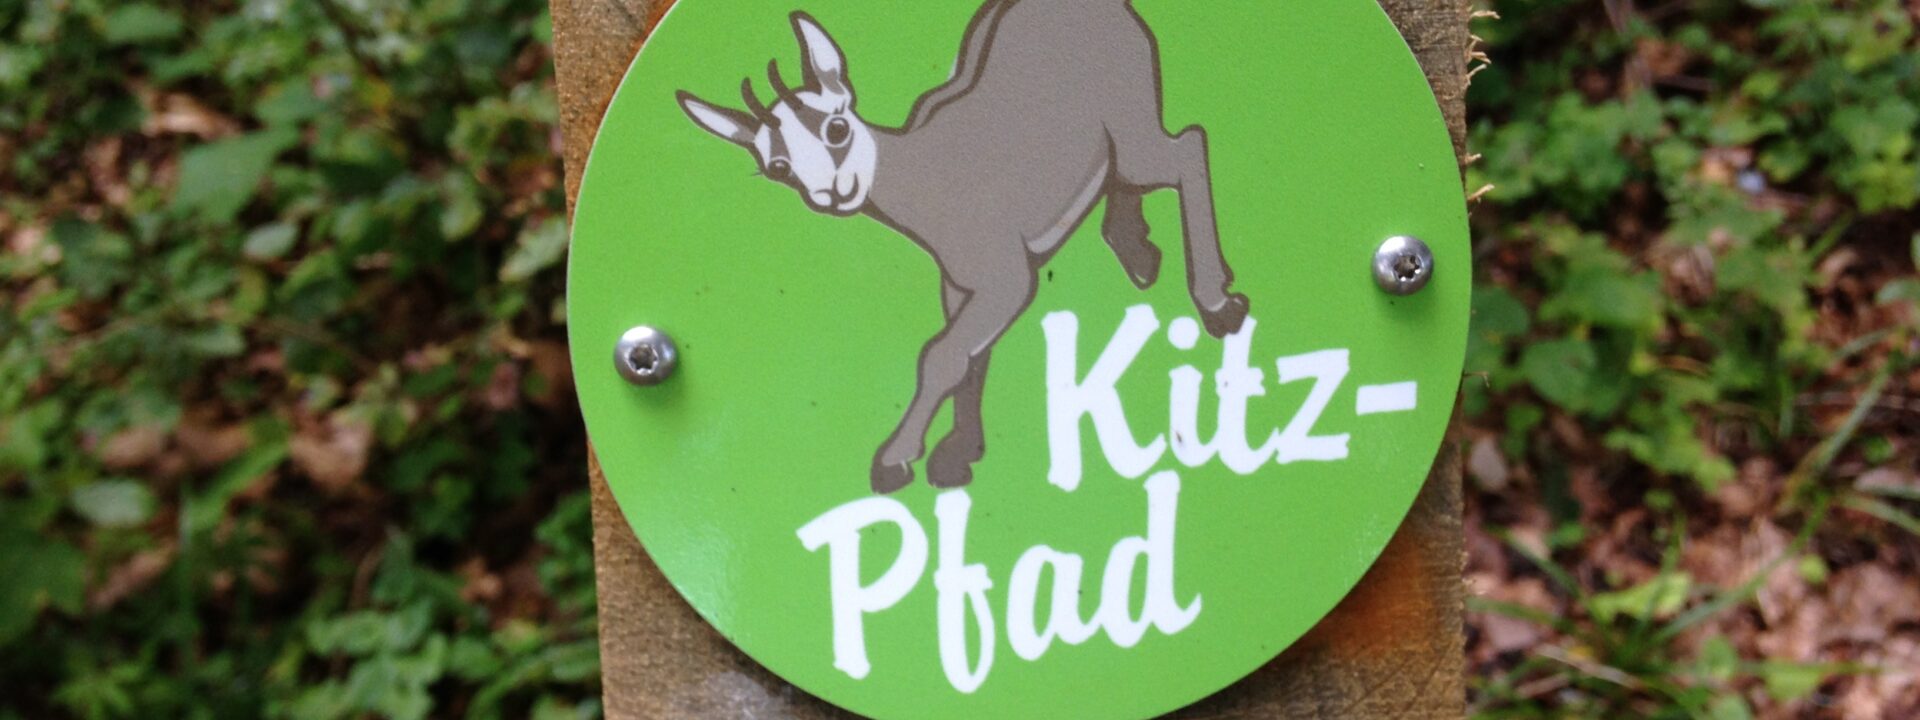 Kitz-Pfad Waldweid